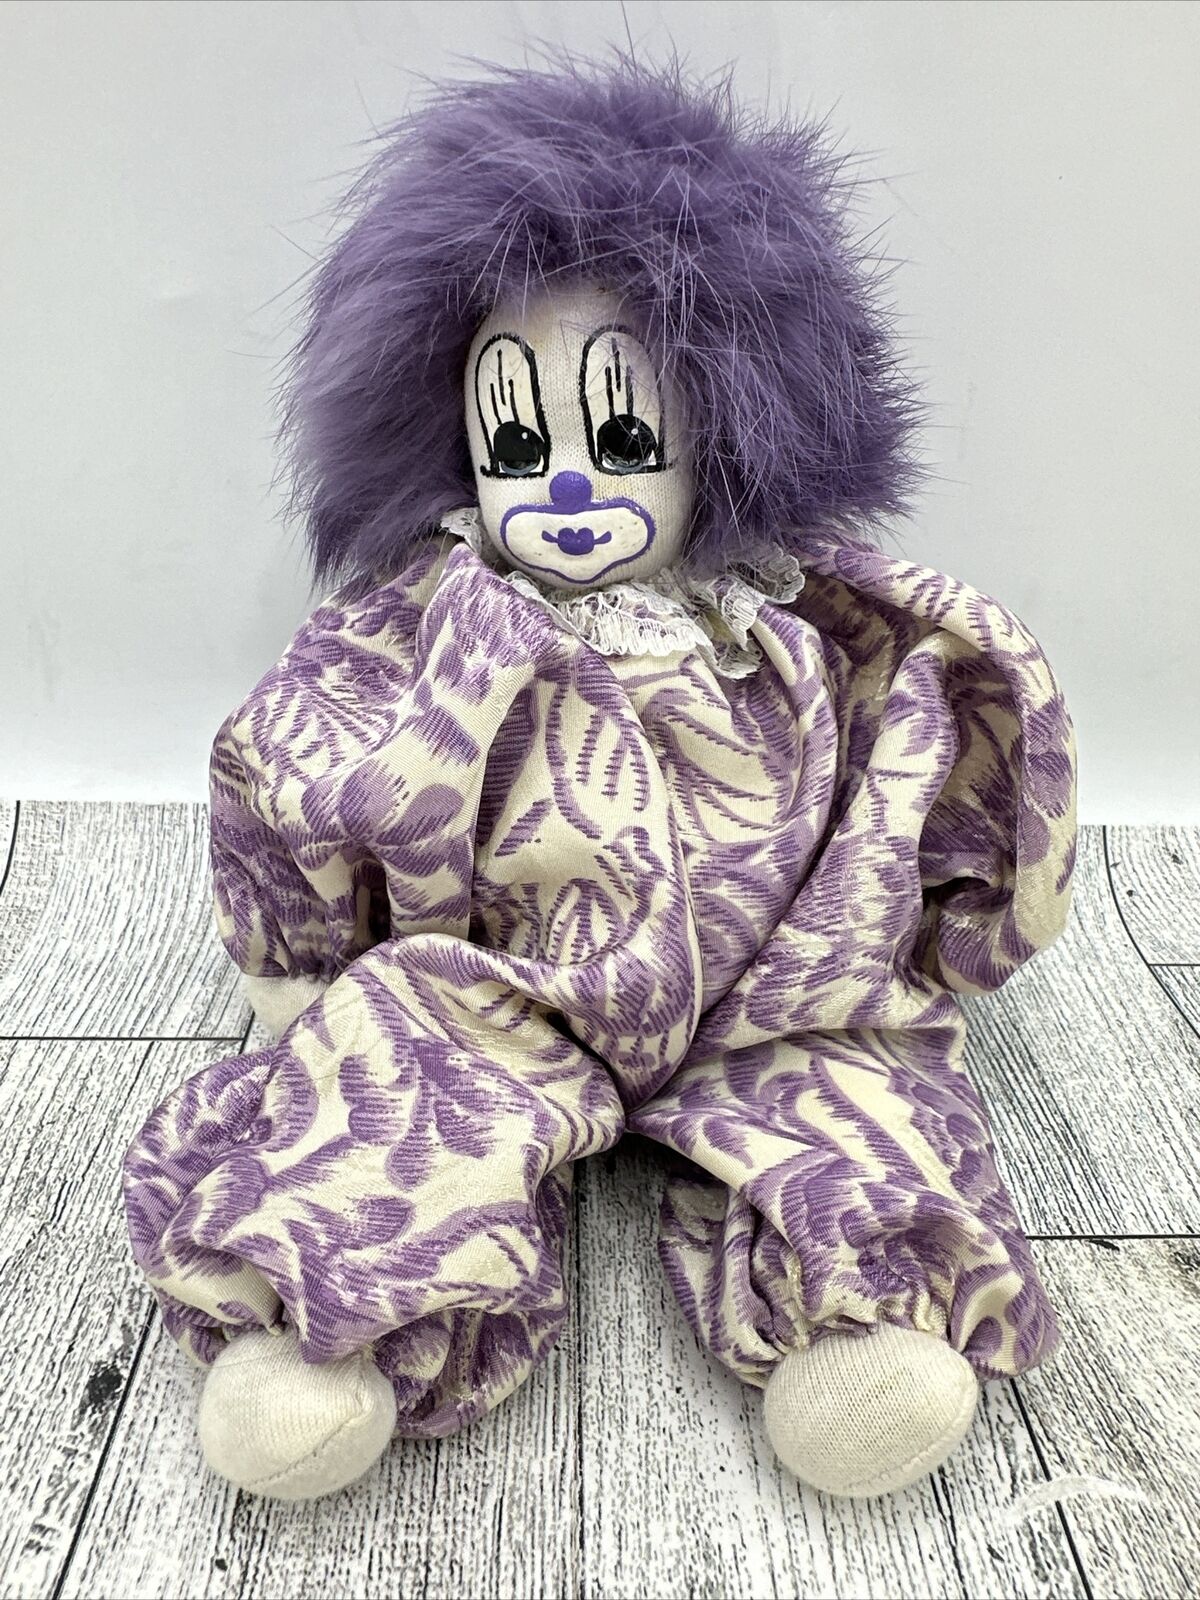 Vintage Q-Tee Clown Doll Figure Purple Floral 8 Inches Long Dark Hair